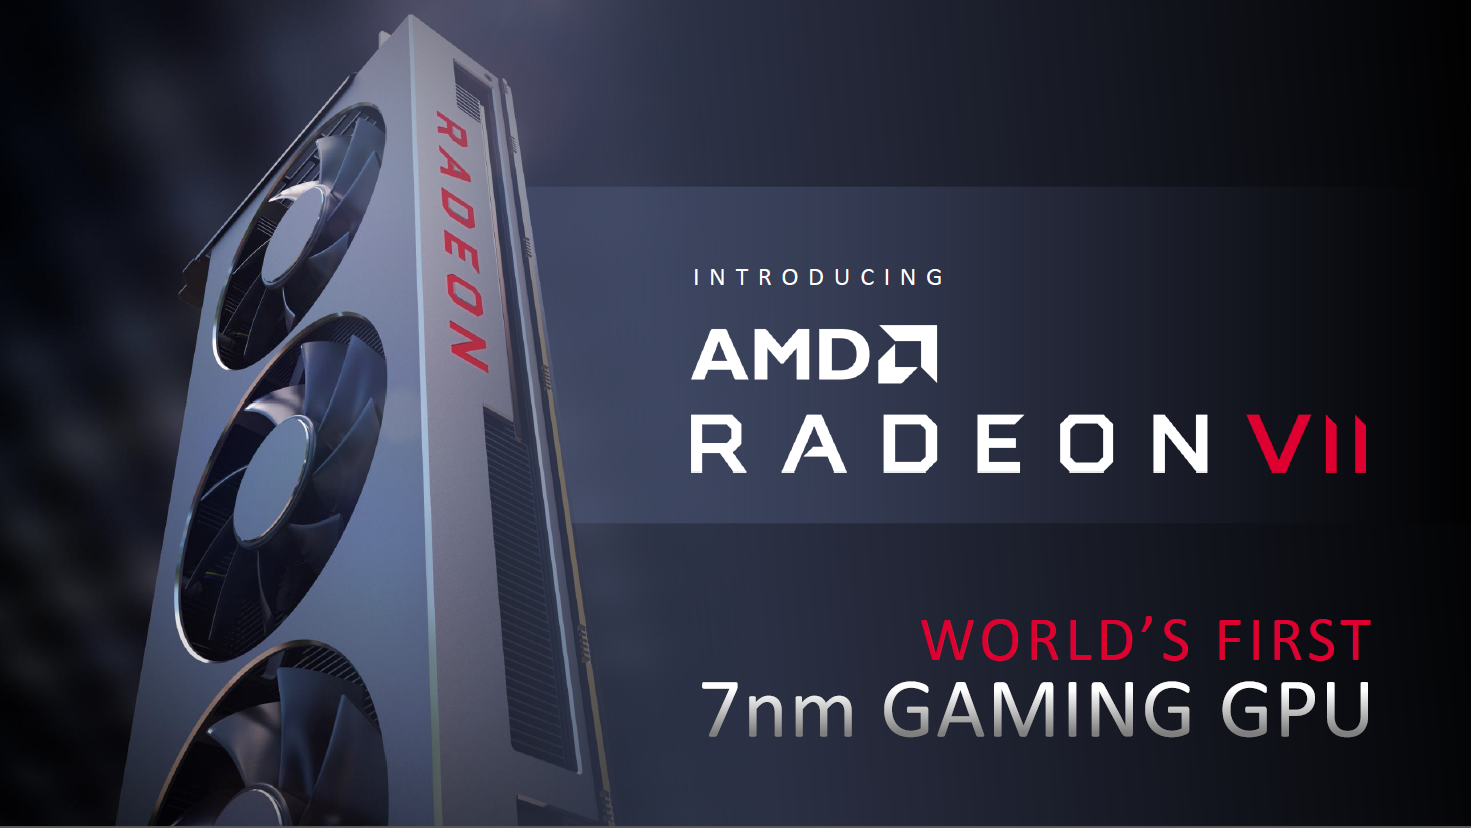 AMD anunció hoy la disponibilidad de Radeon VII